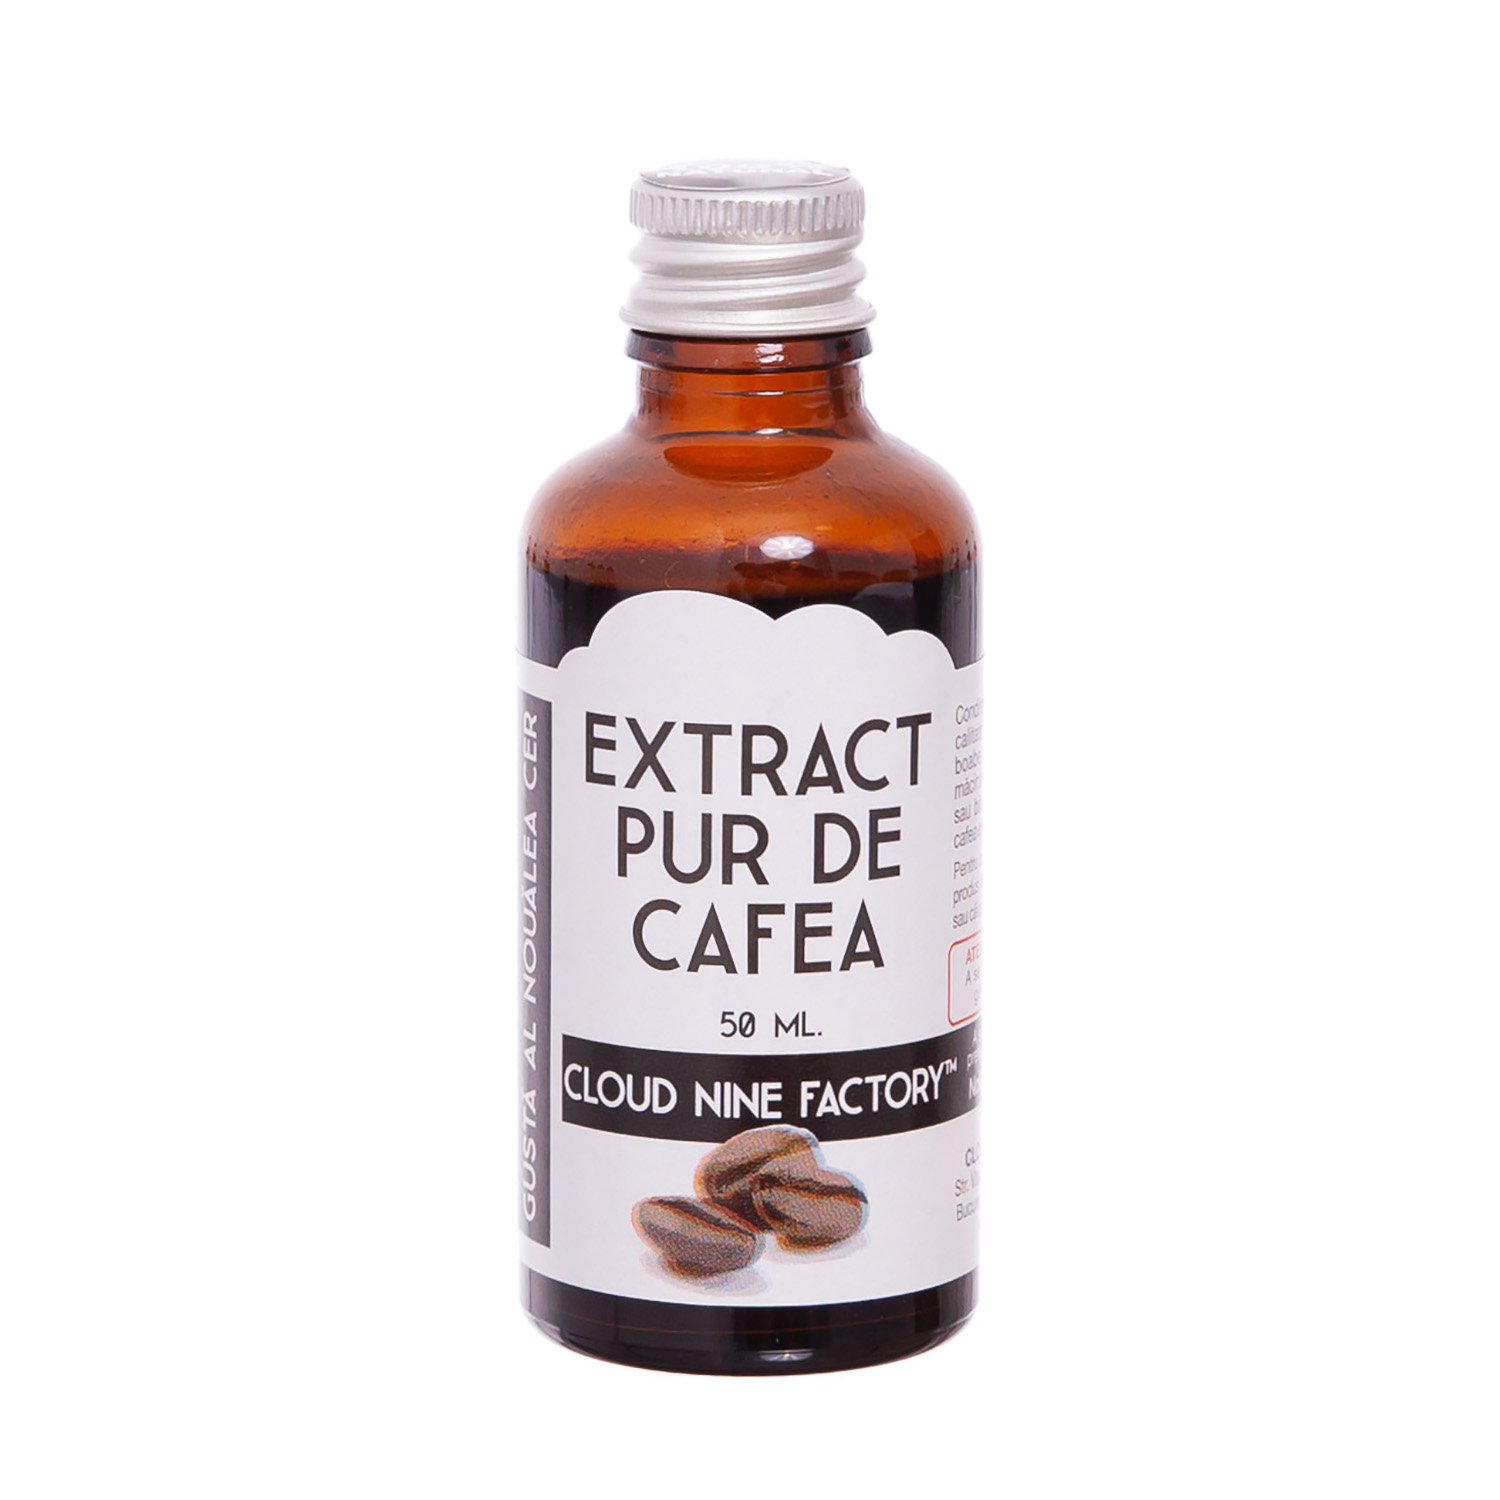 Extract pur de cafea, 50 ml, Cloud Nine Factory